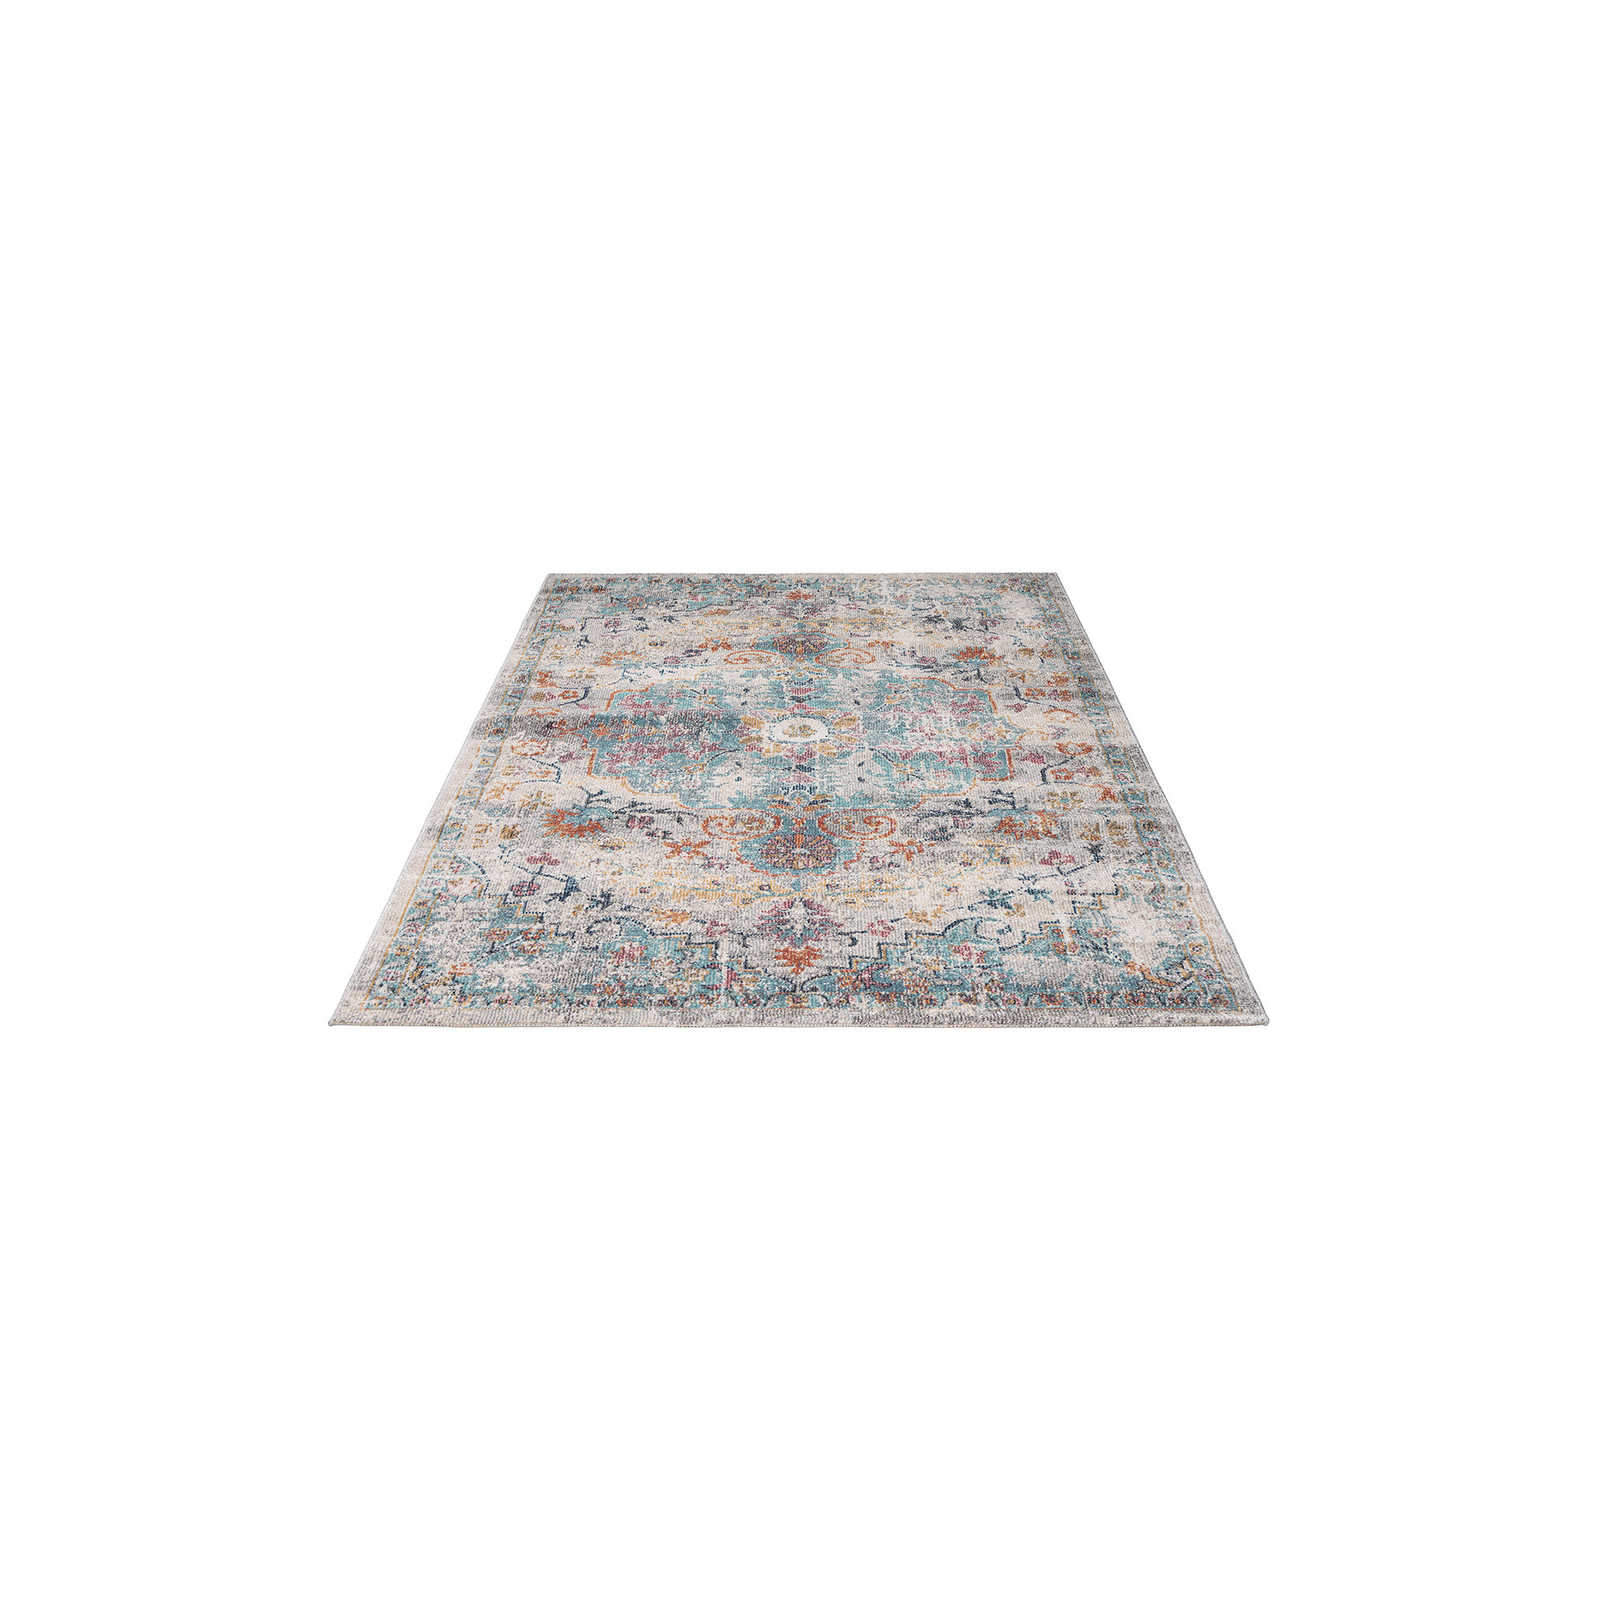 Pflegeleichter Outdoor Teppich Bunt – 200 x 140 cm
